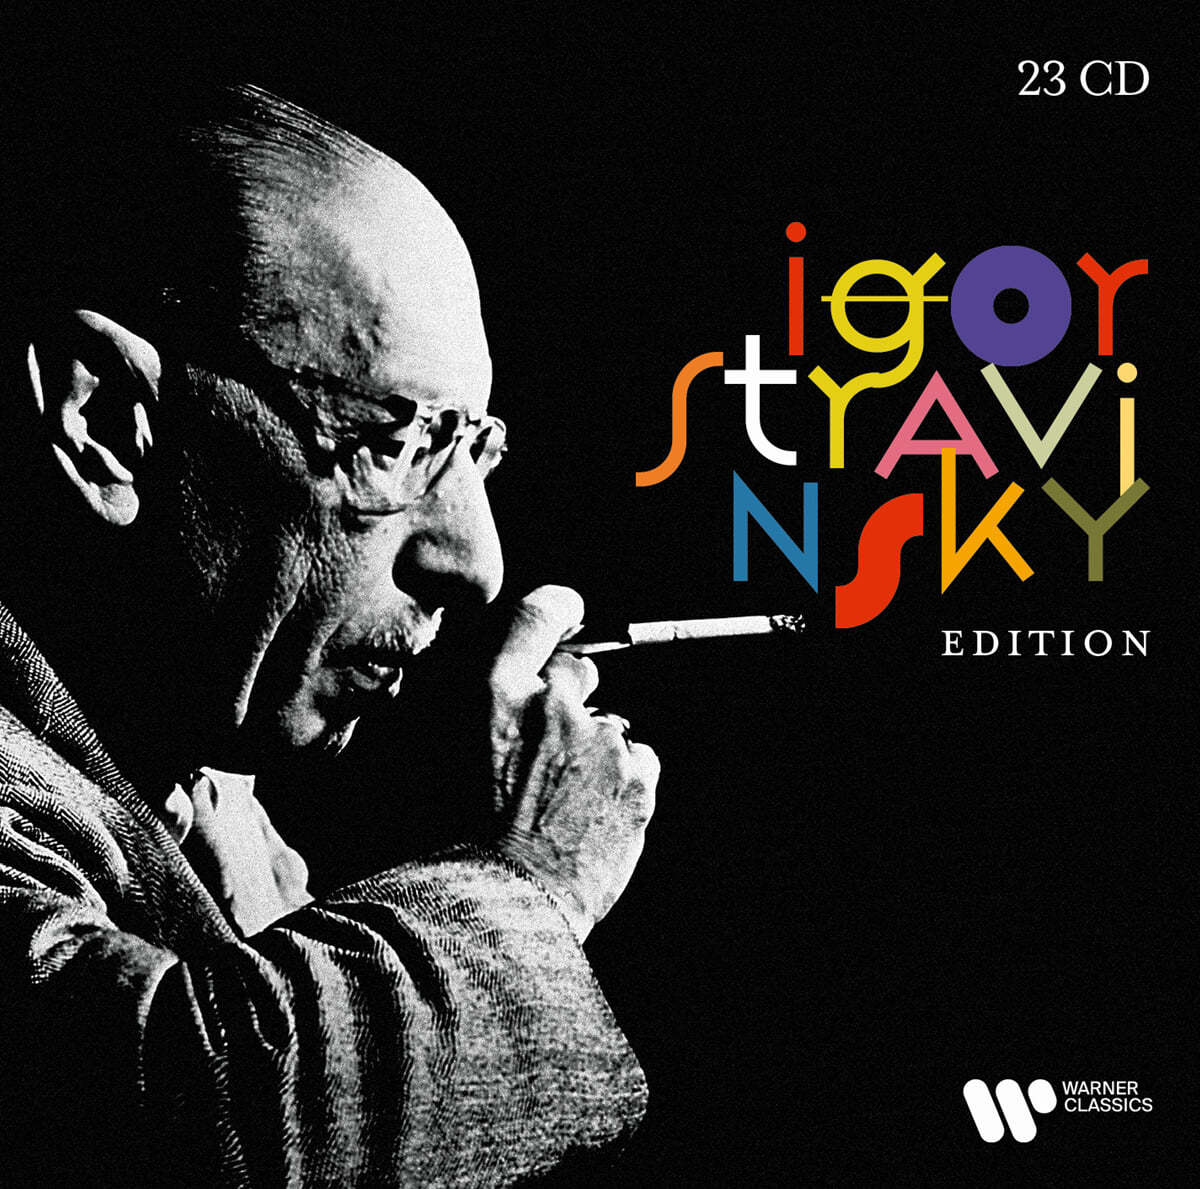 스트라빈스키 에디션 (Igor Stravinsky Edition) 